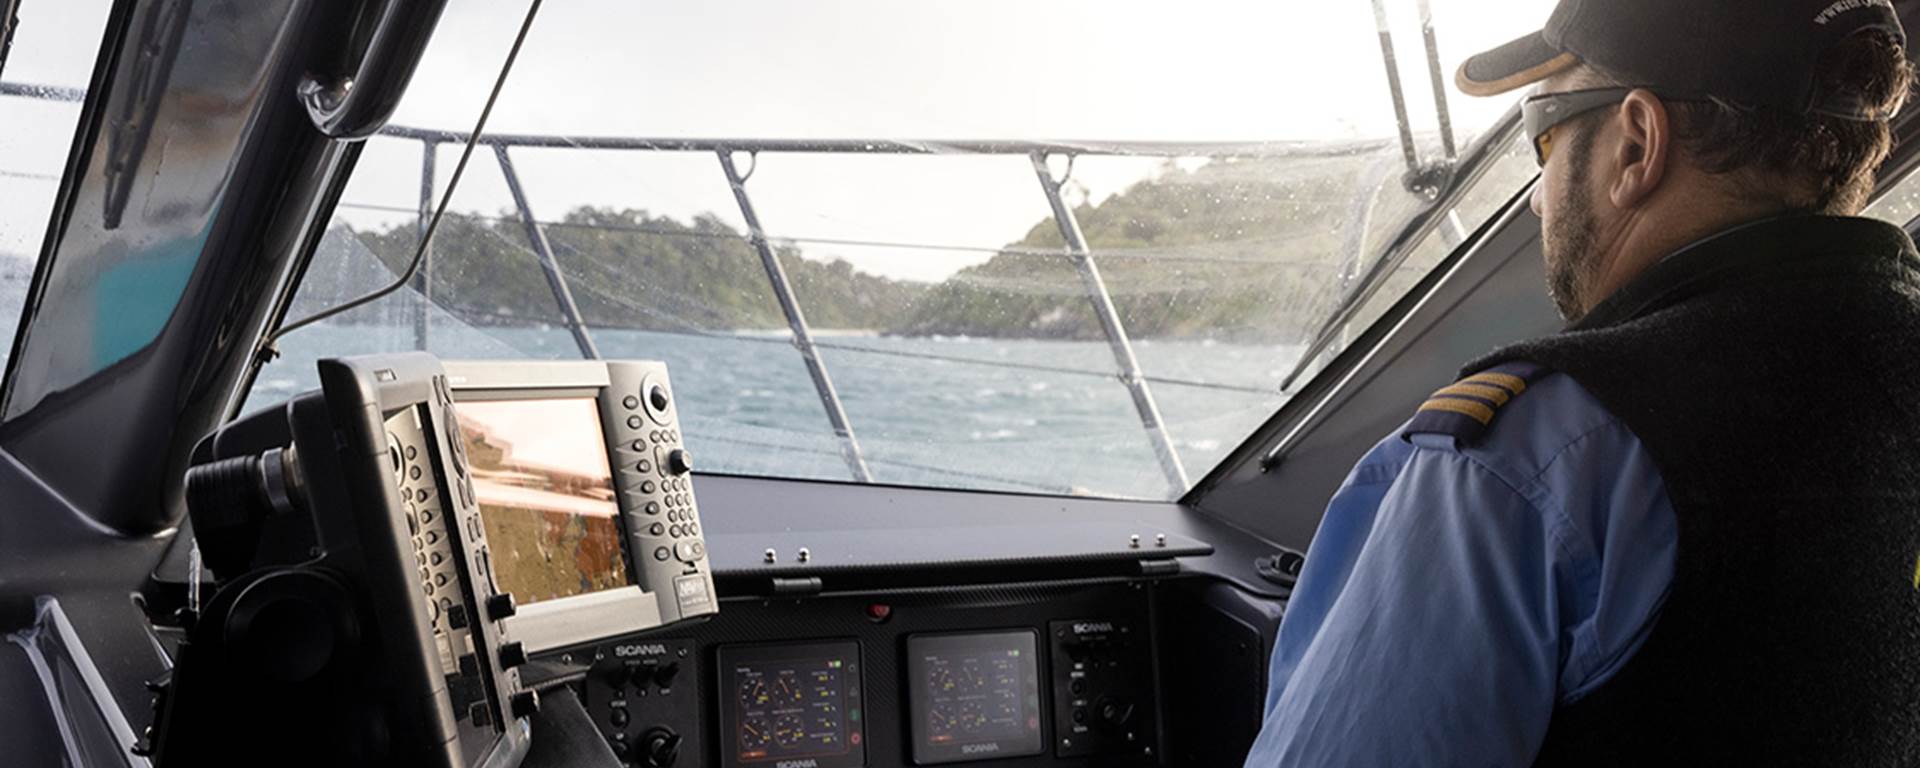 Skipper looks toward Stewart Island while in the wheelhouse of the ferry